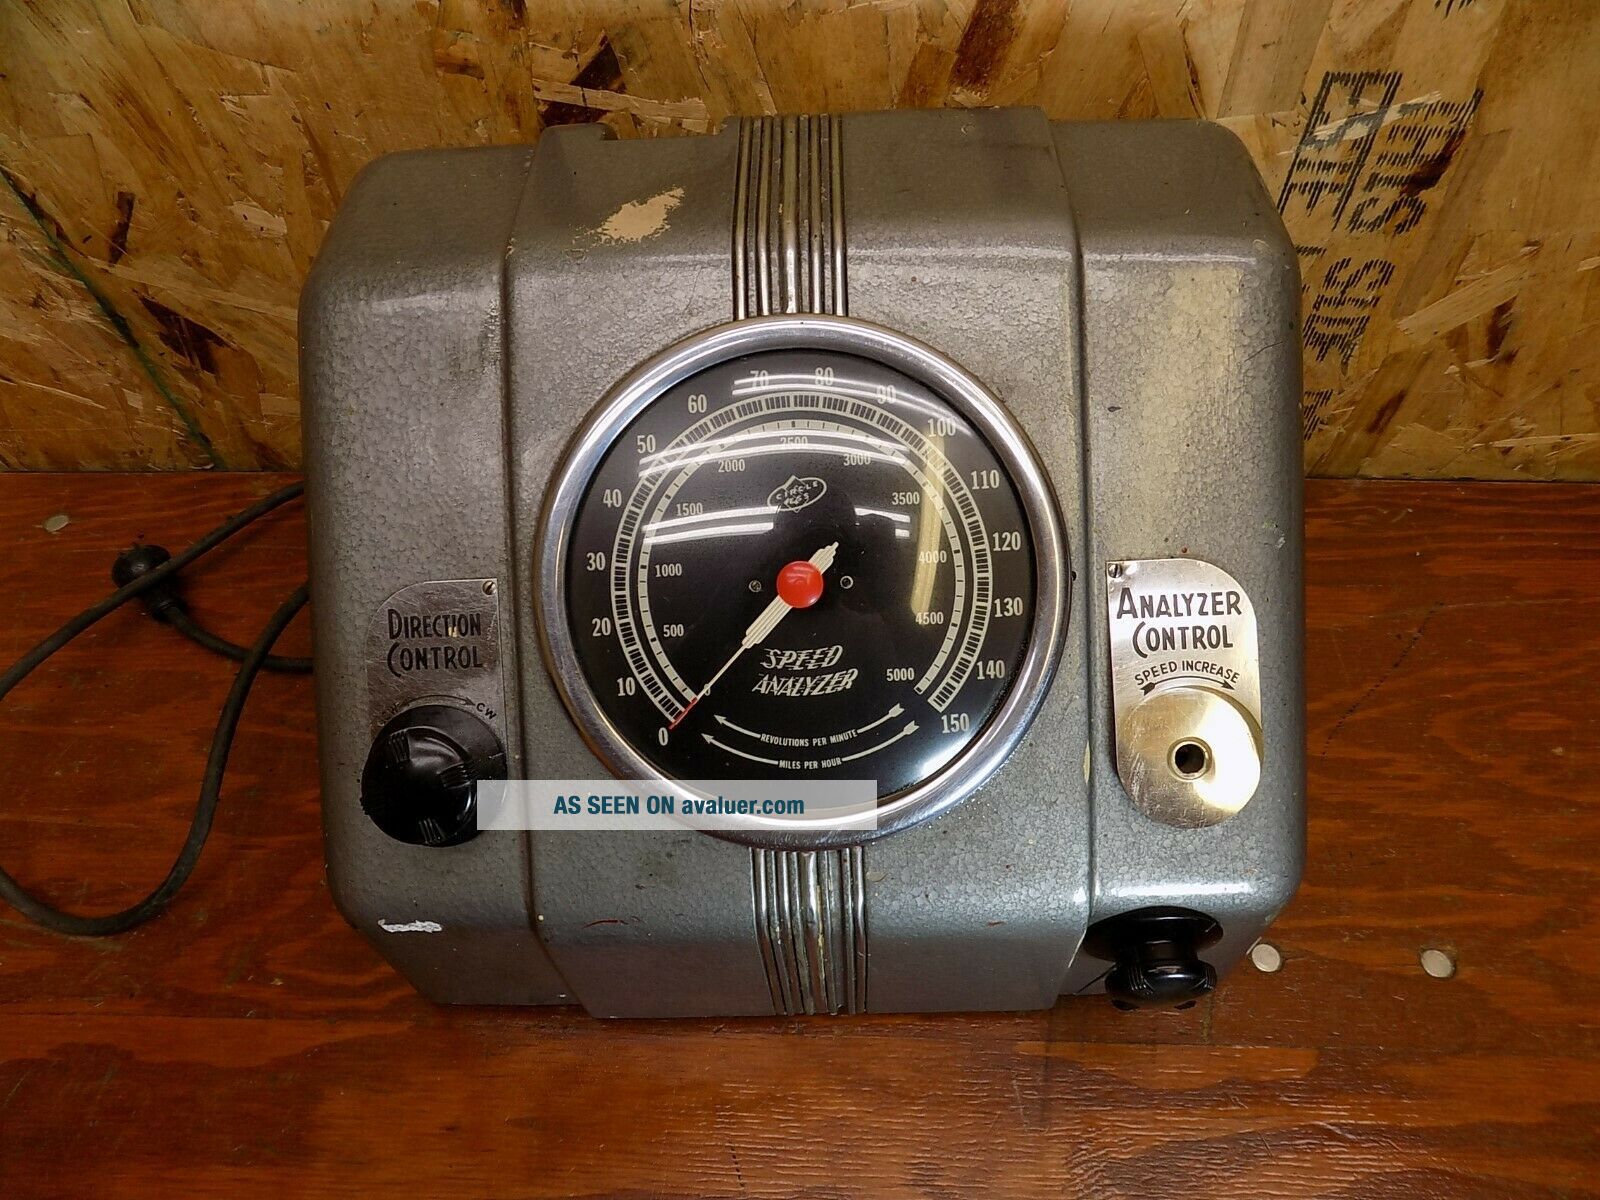 vintage stewart warner speedometer gauge calibration machine tester gas oil sign